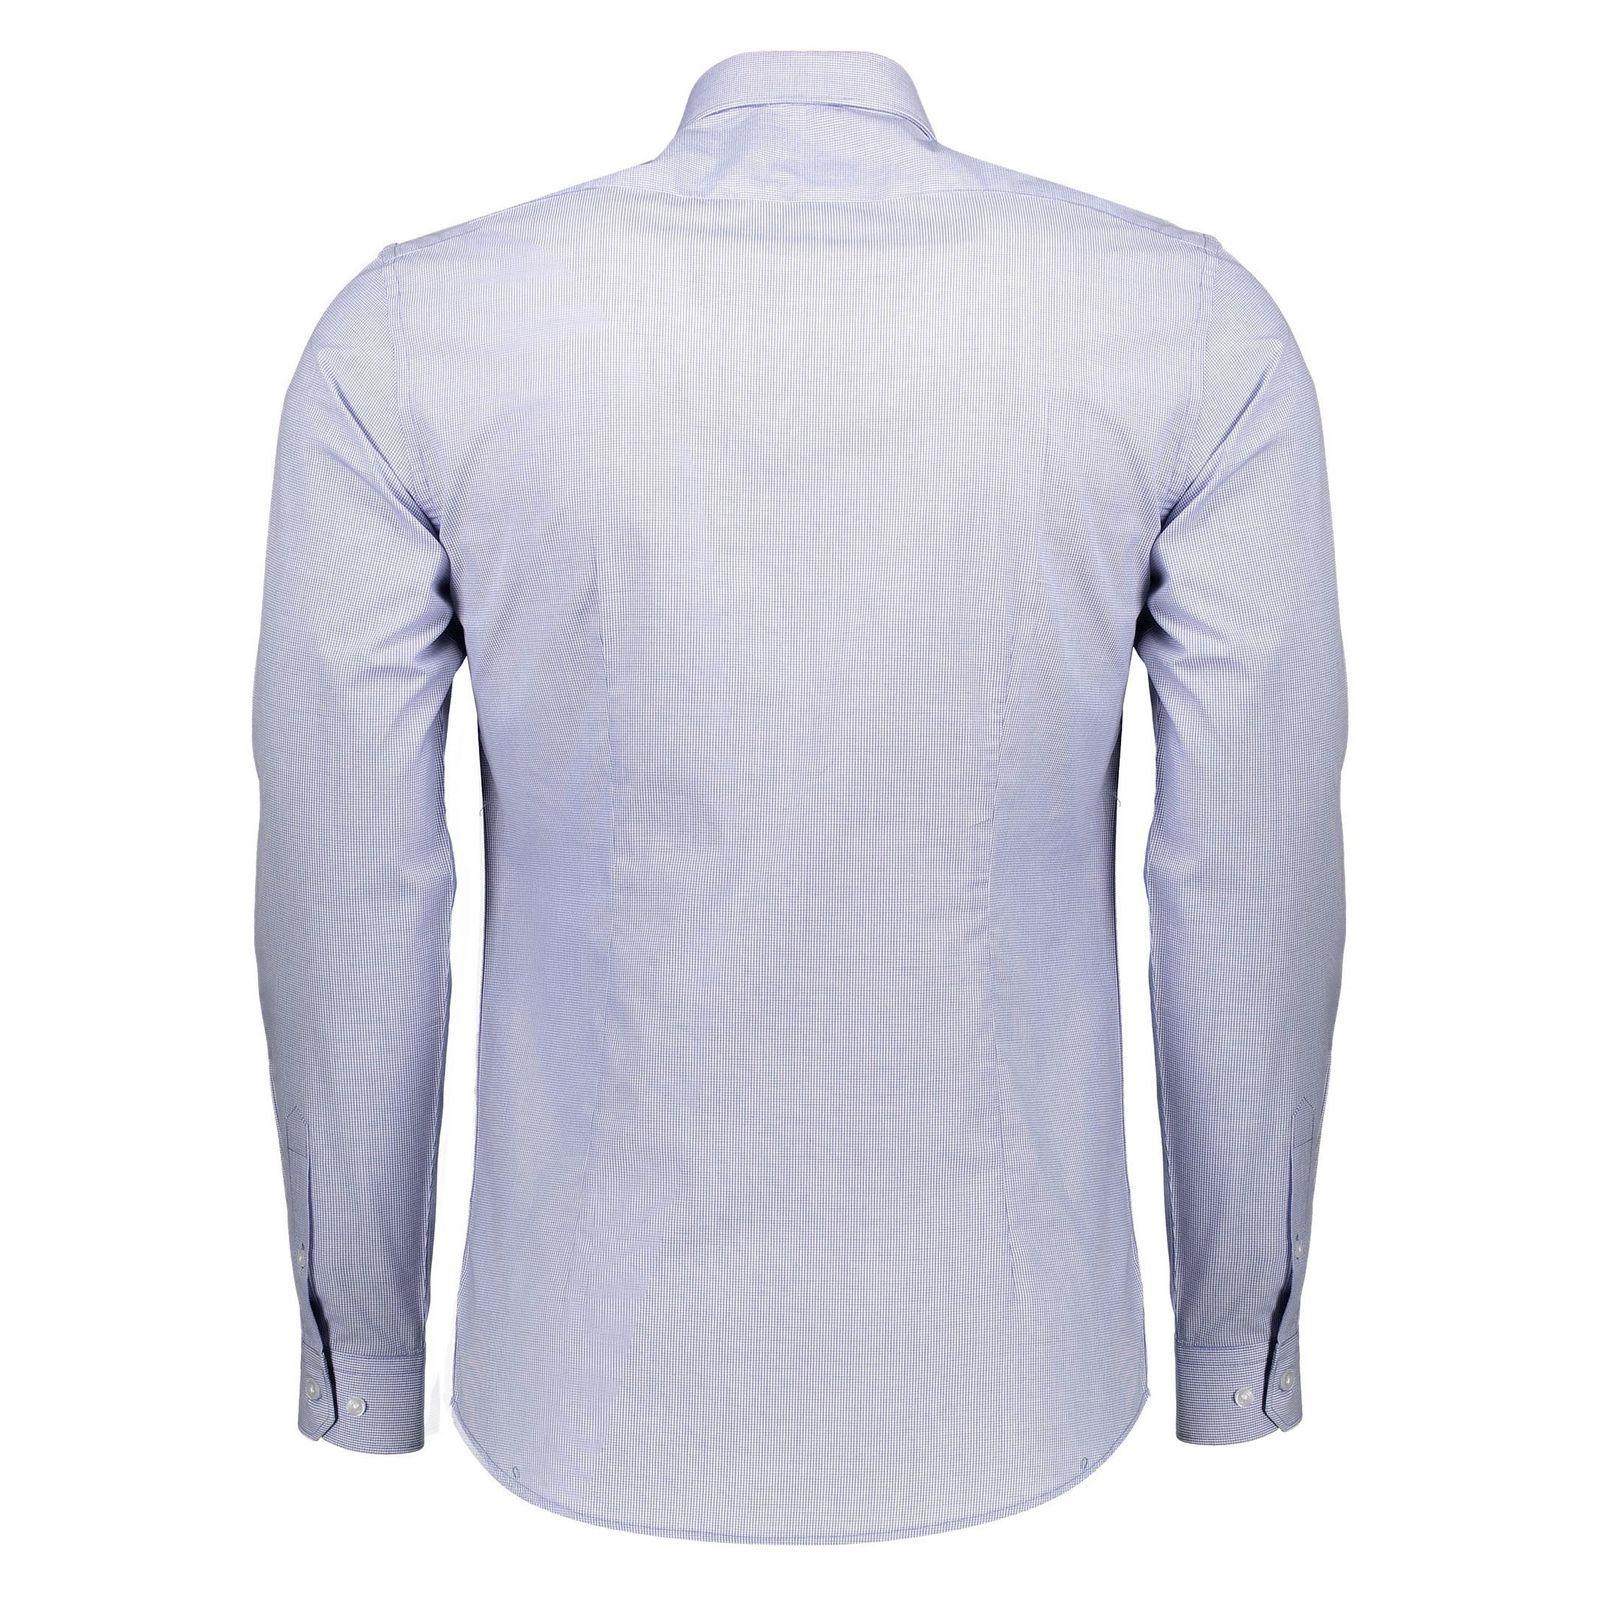 پیراهن رسمی مردانه - رد هرینگ - آبي روشن - 3